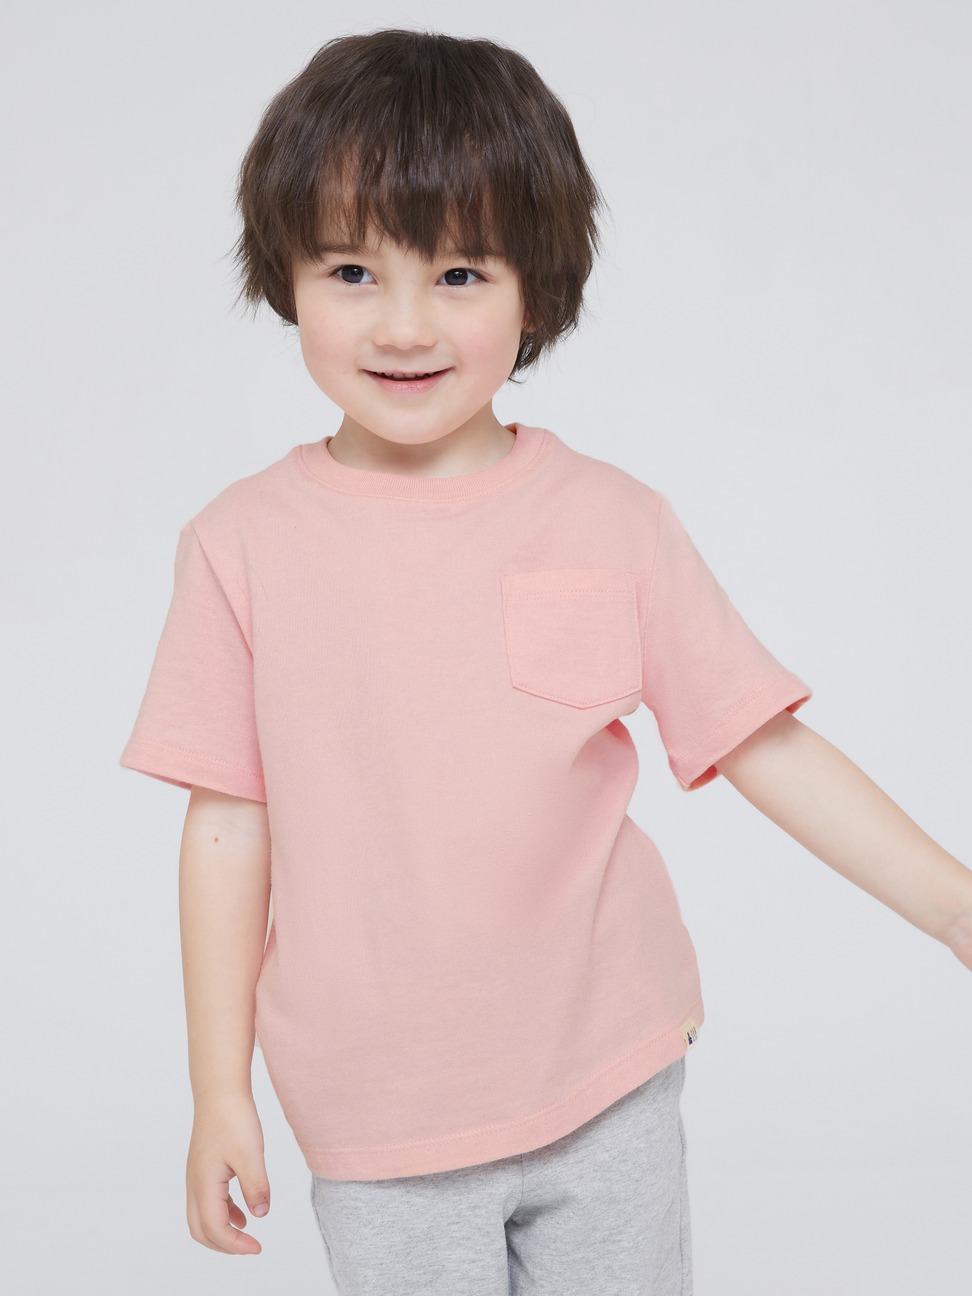 男幼童裝|純棉素色圓領短袖素T 布萊納系列-淡粉色